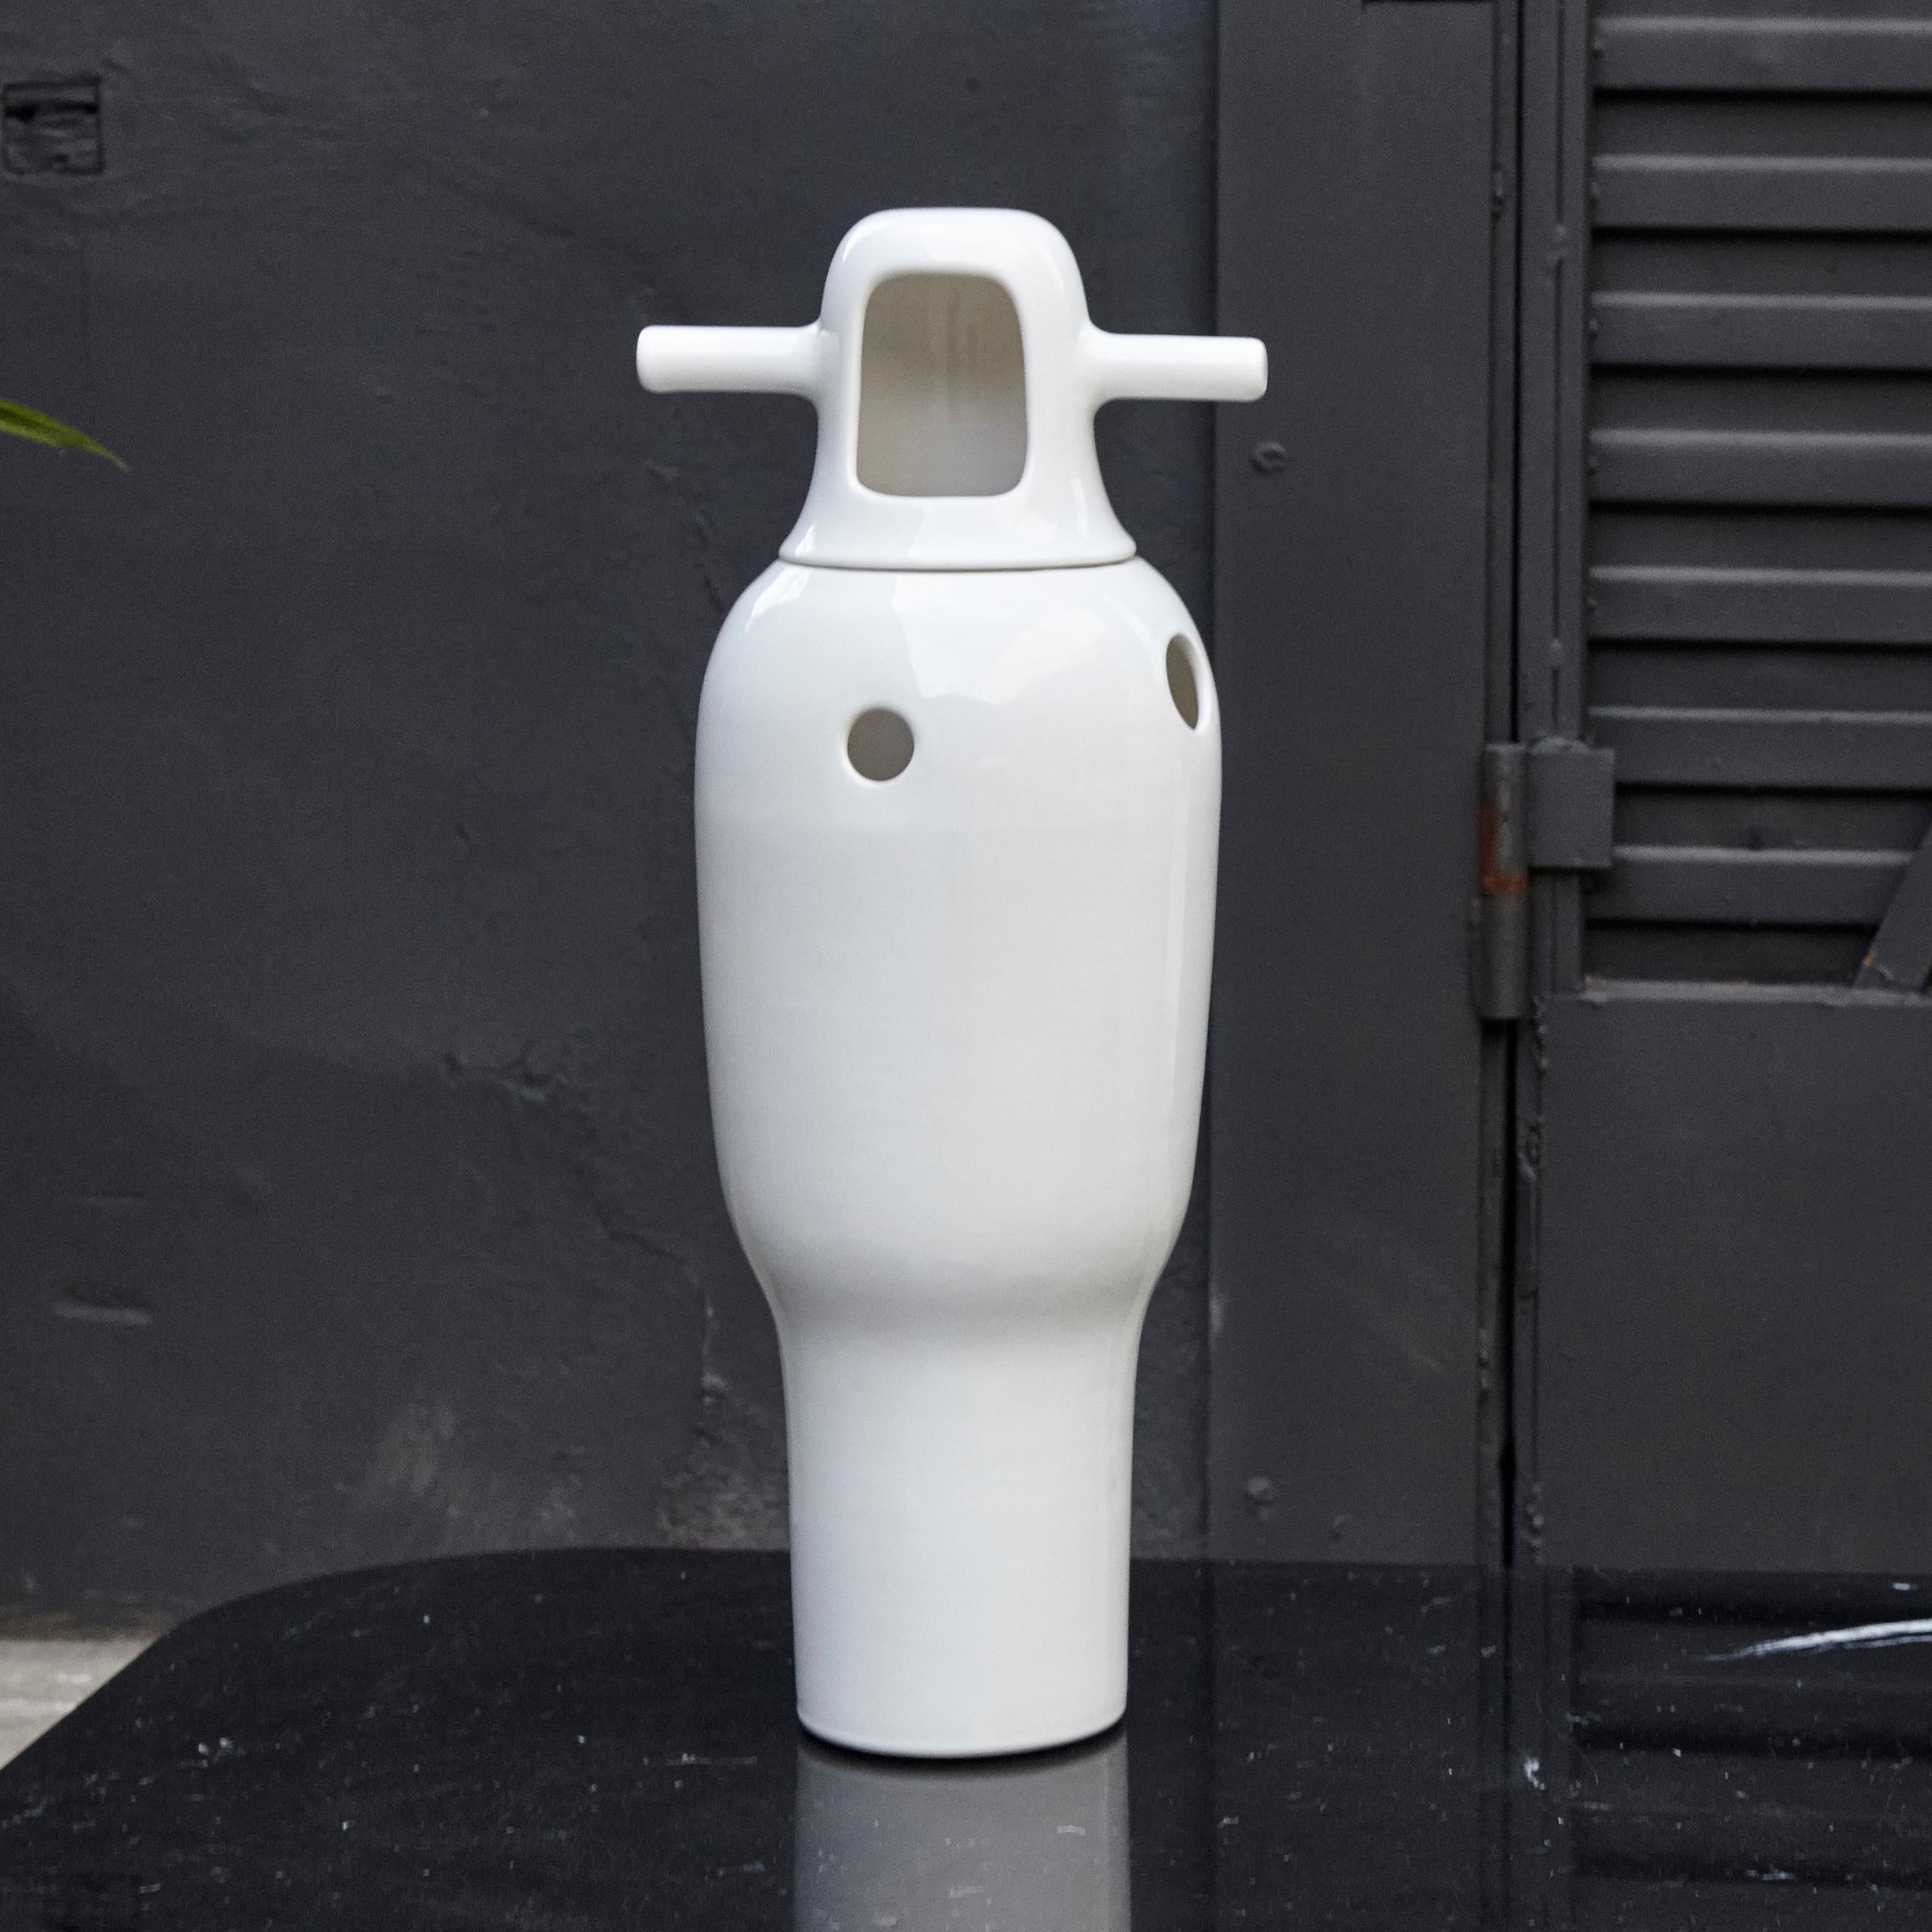 Zeitgenössische Vase Showtime Nummer 4 von Jaime Hayon.
Hergestellt von BD Barcelona (Spanien).

Besteht aus zwei Teilen aus glasiertem Steinzeug mit weißer Oberfläche.

Maße: Höhe 48 cm x Durchmesser 21 cm.